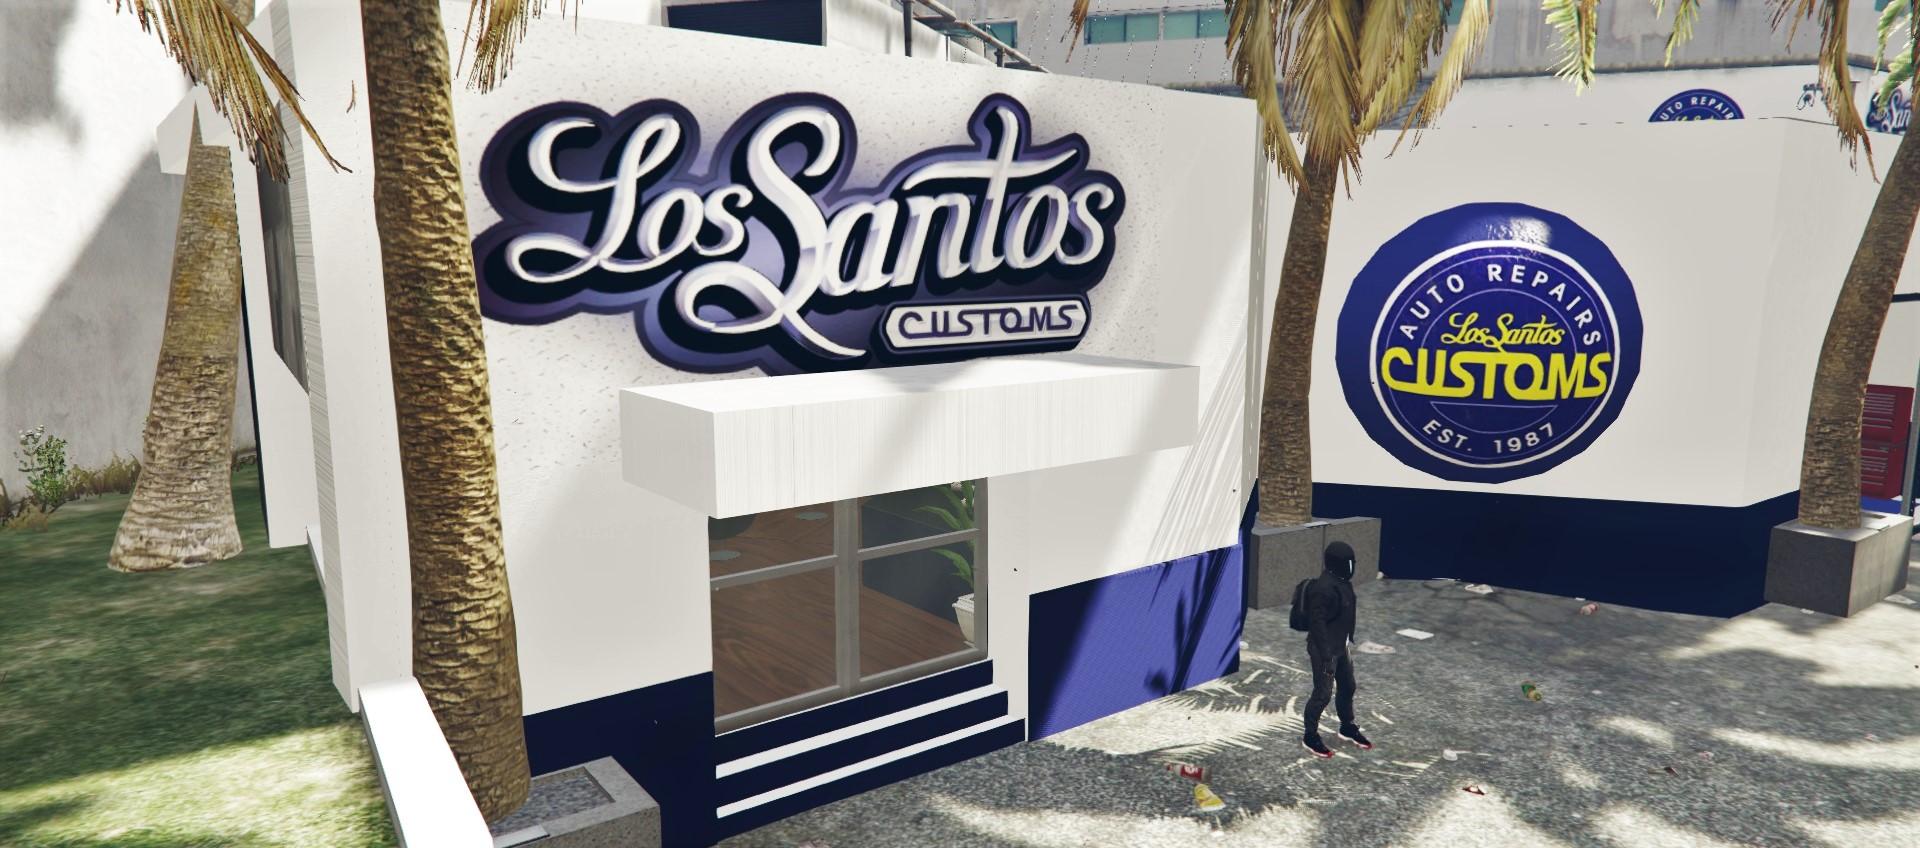 Los Santos Customs 1987 | Sticker